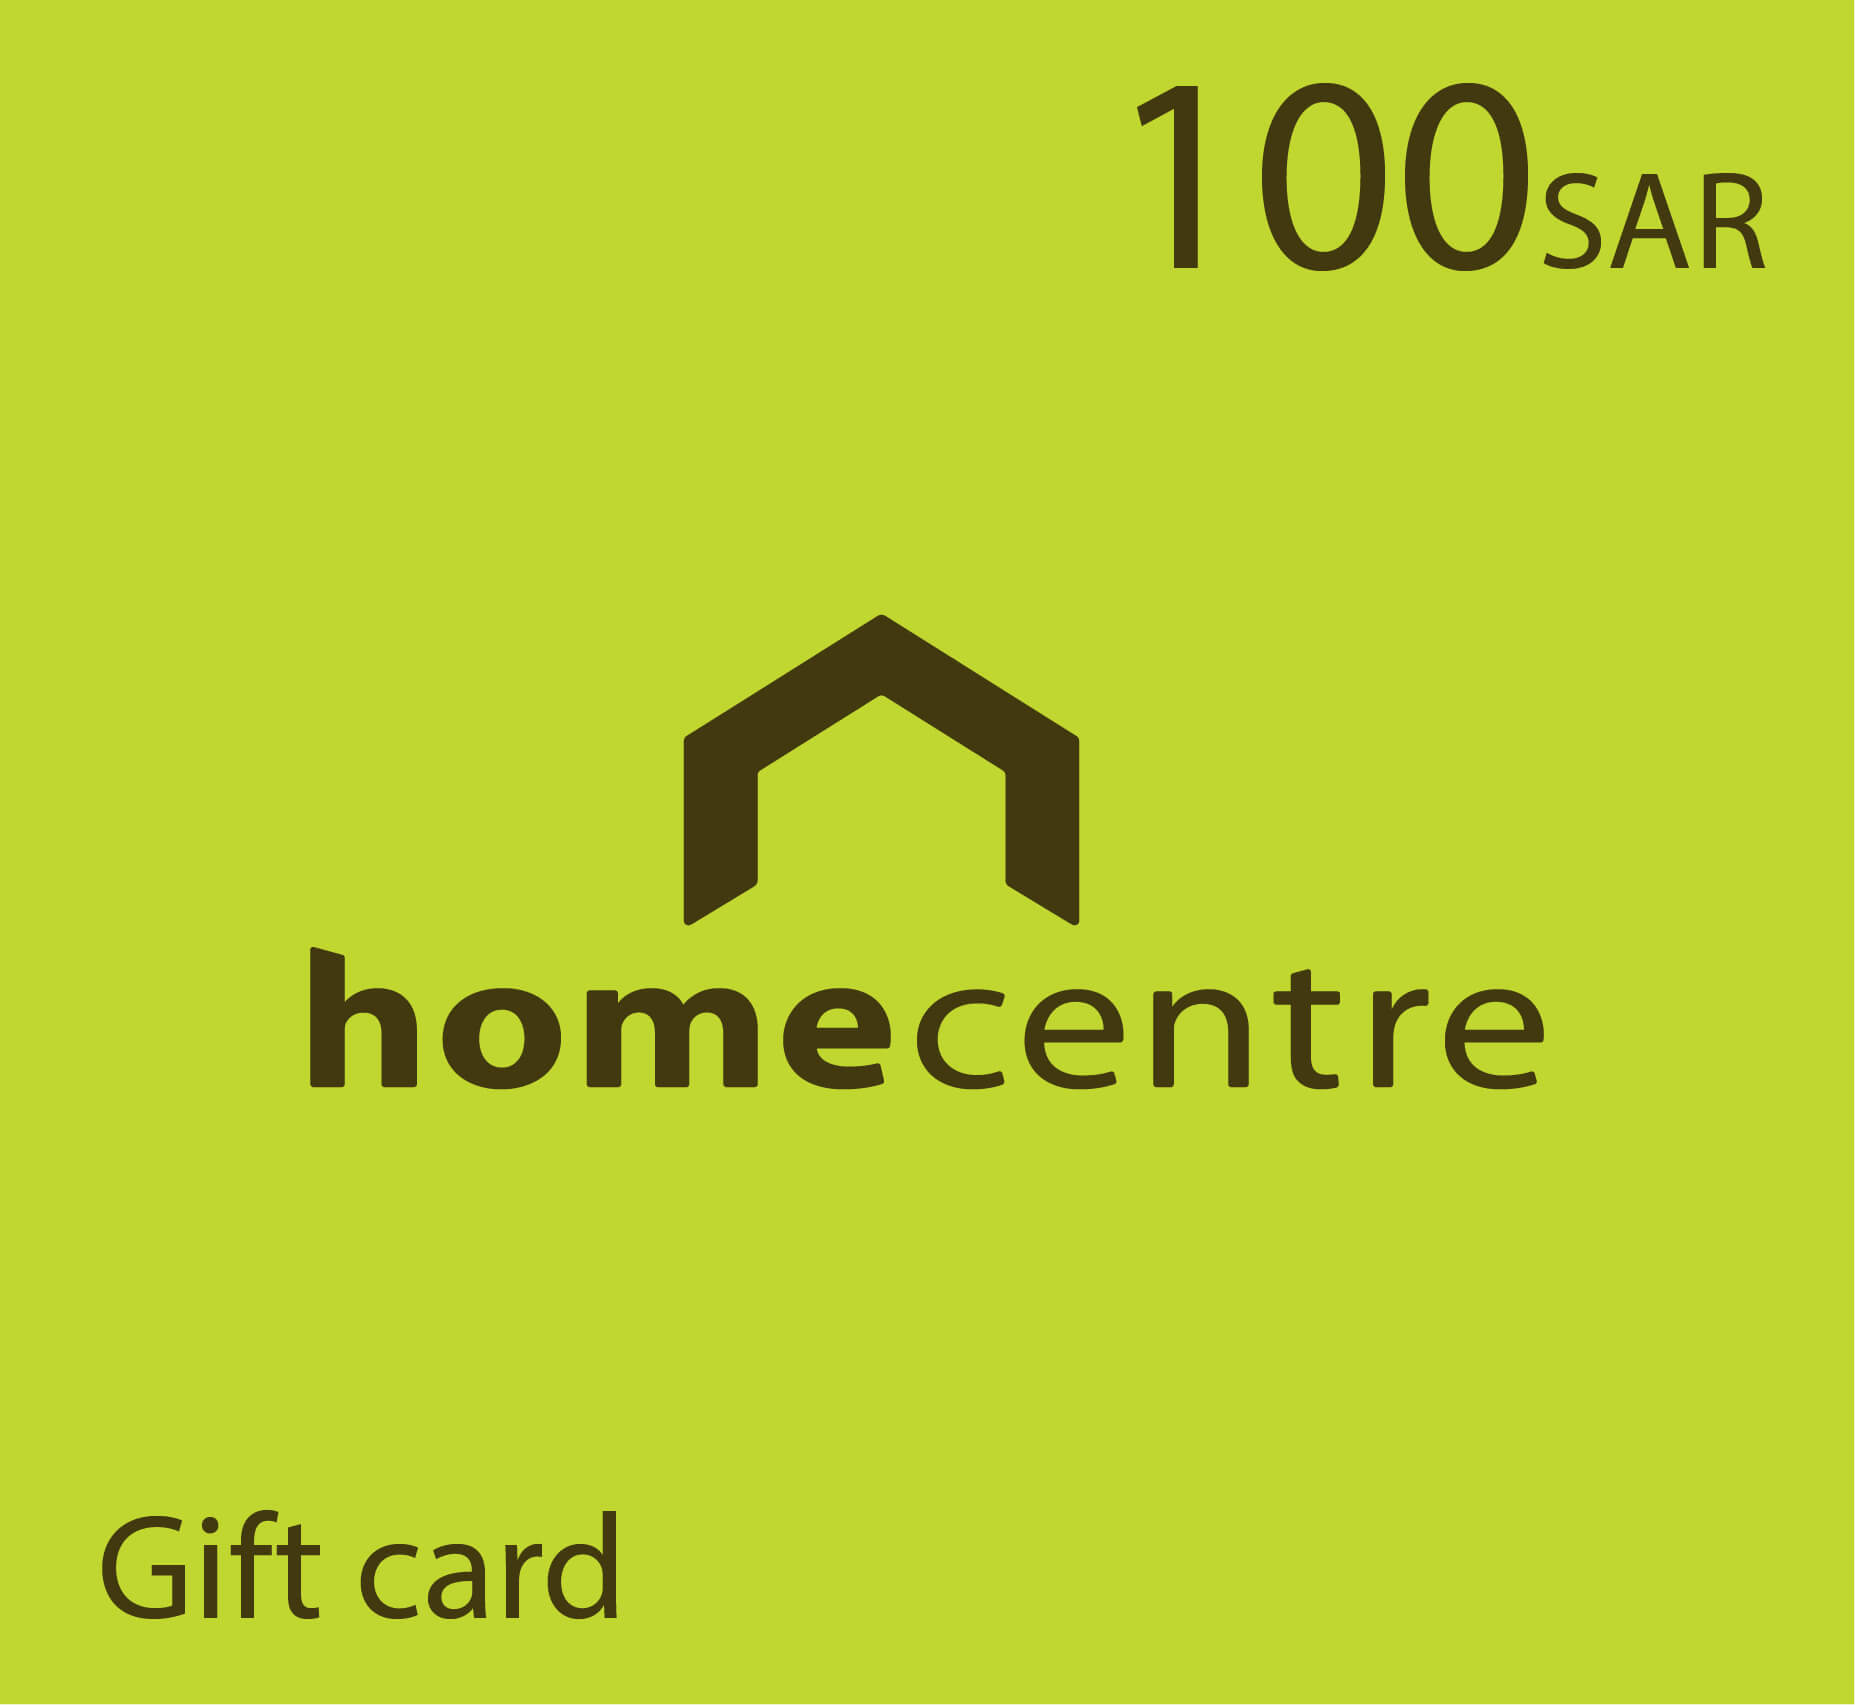 Home Center Gift card - 100 SAR